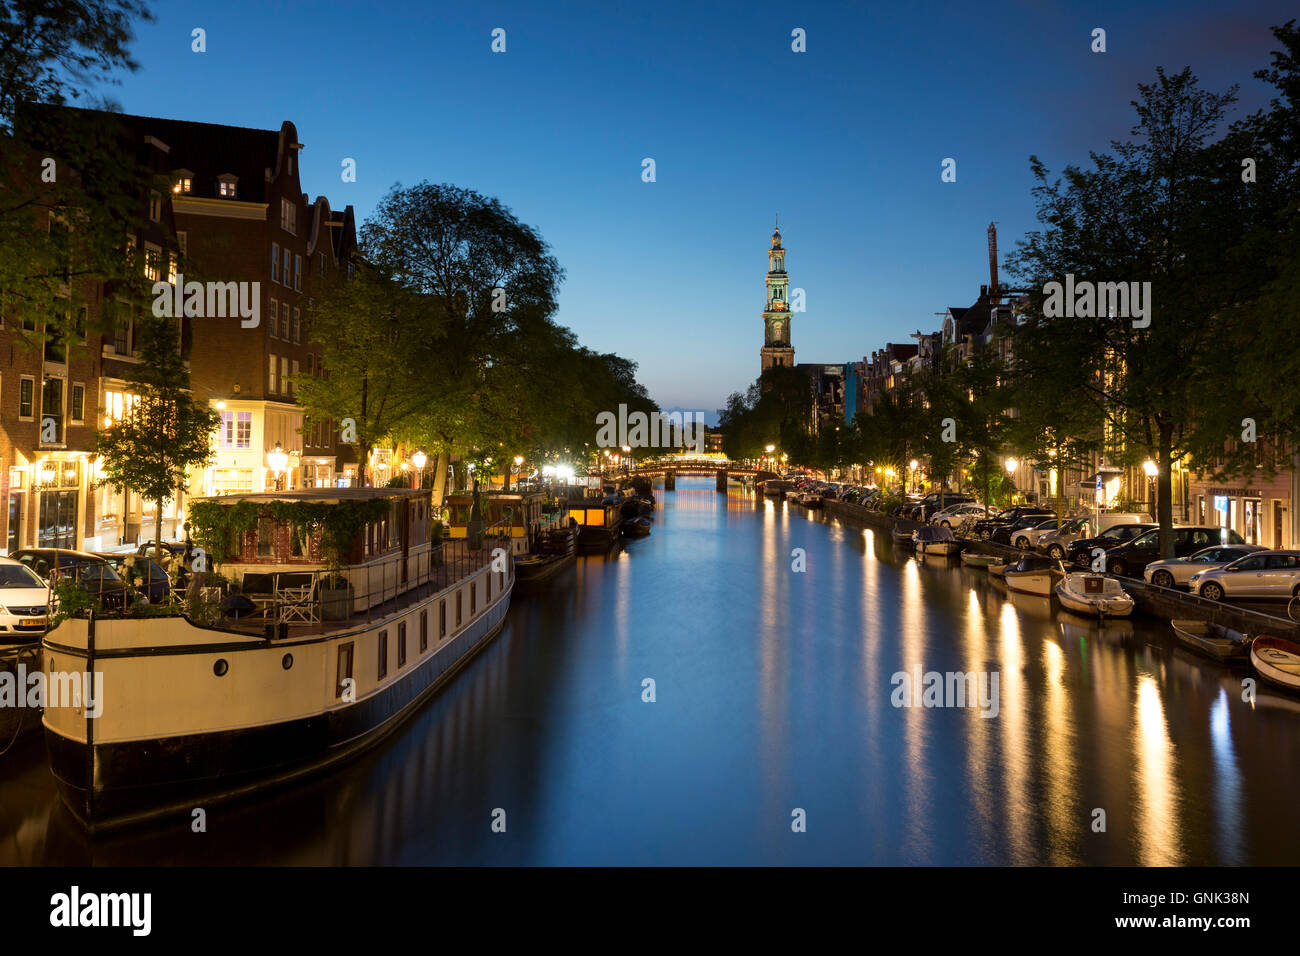 Scène du canal typique d'Amsterdam - l'église Westerkerk, canal et péniches le long de Prinsengracht à Amsterdam, Hollande Banque D'Images